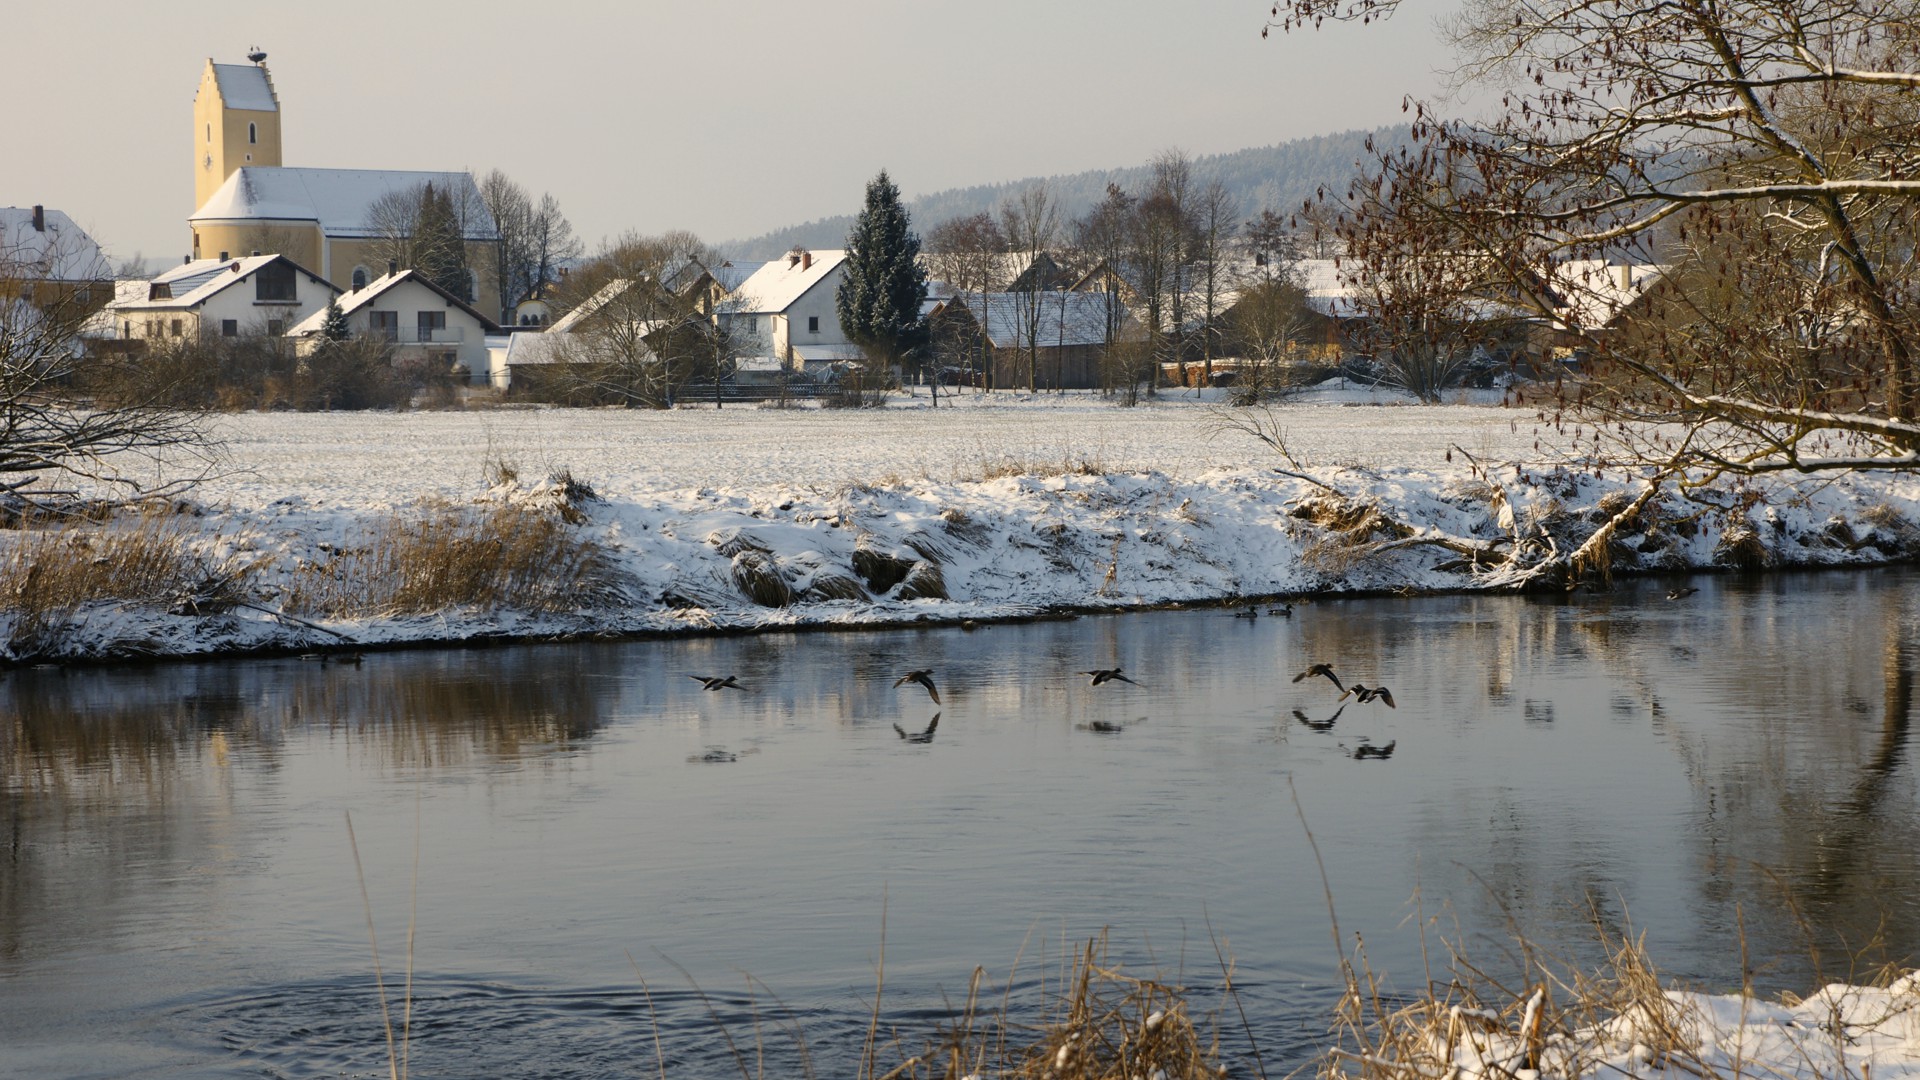 Winterbild: Enten landen auf dem Regenfluss bei Untertraubenbach